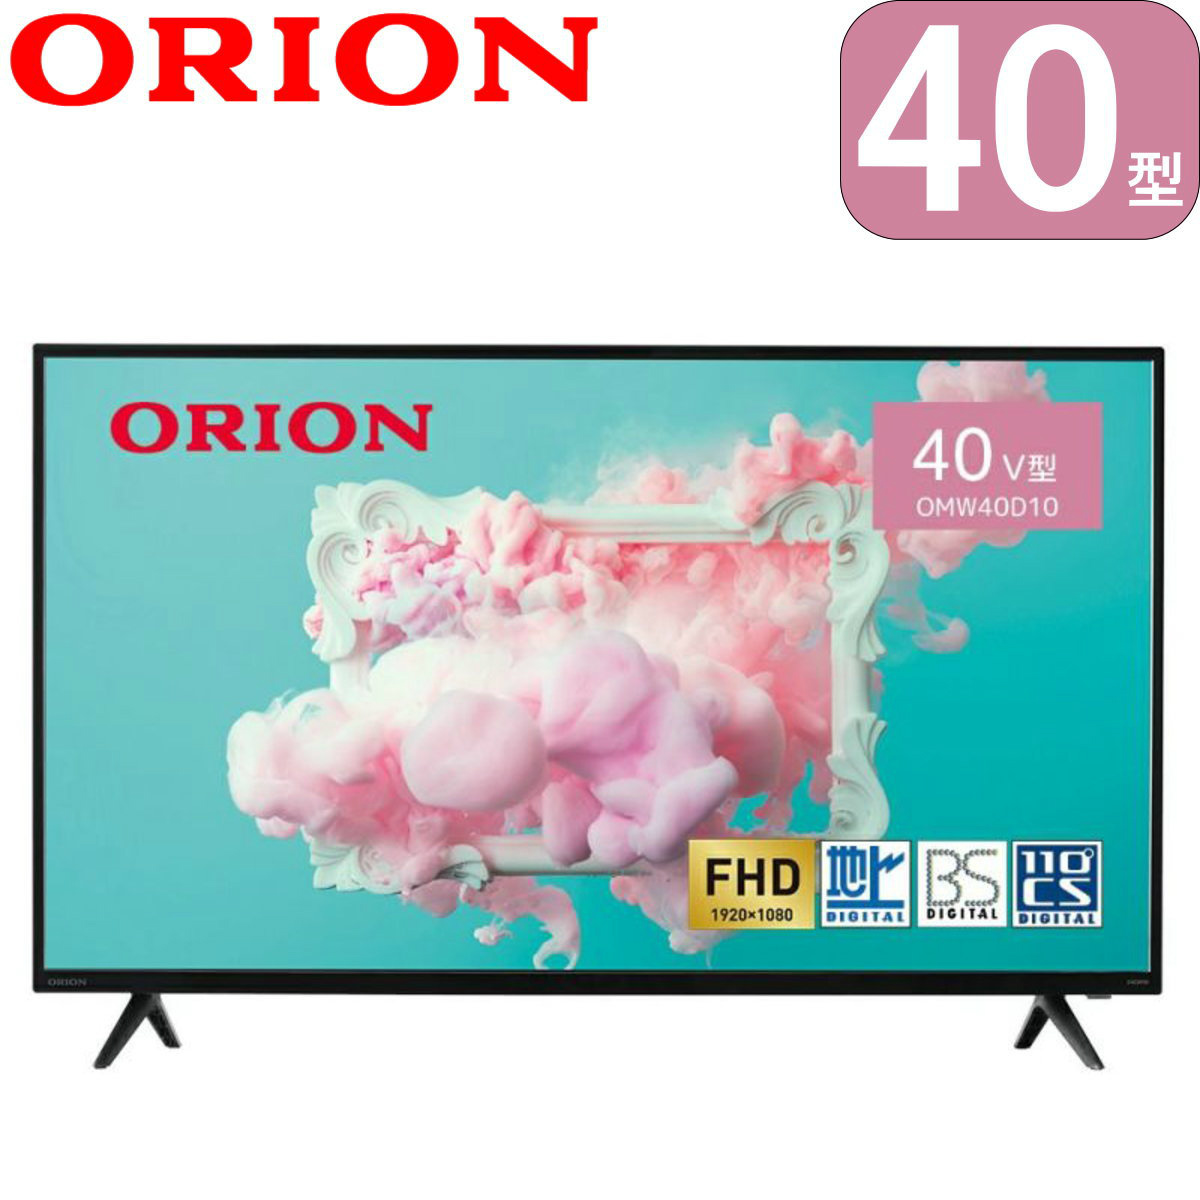 2023年モデル】ORION 40v型 フルハイビジョン液晶テレビ OMW40D10